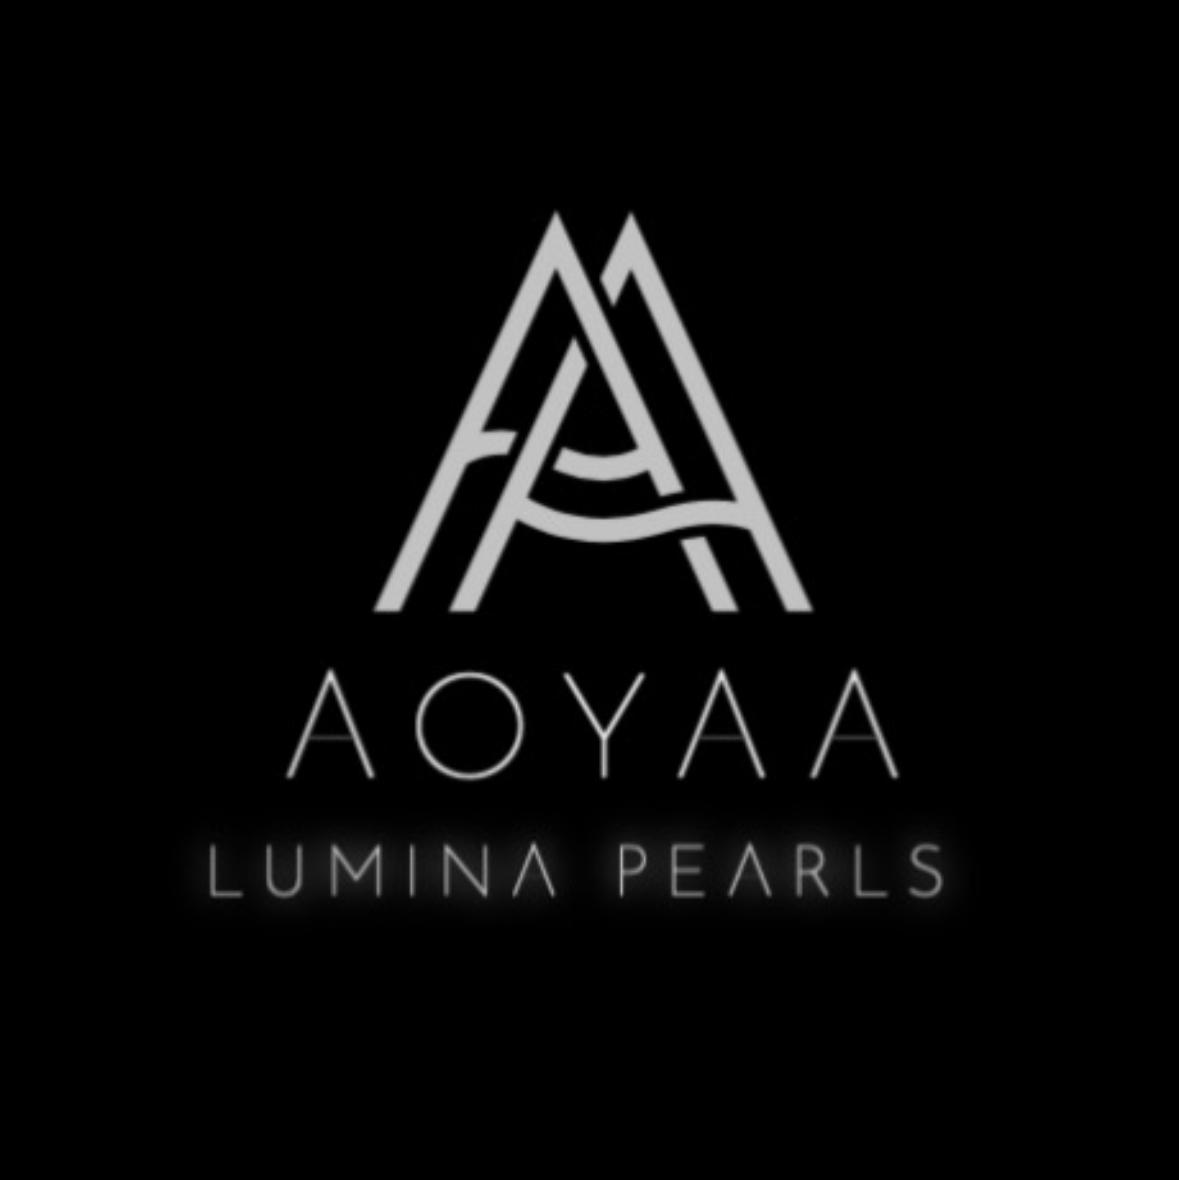 Aoyaa Pearls